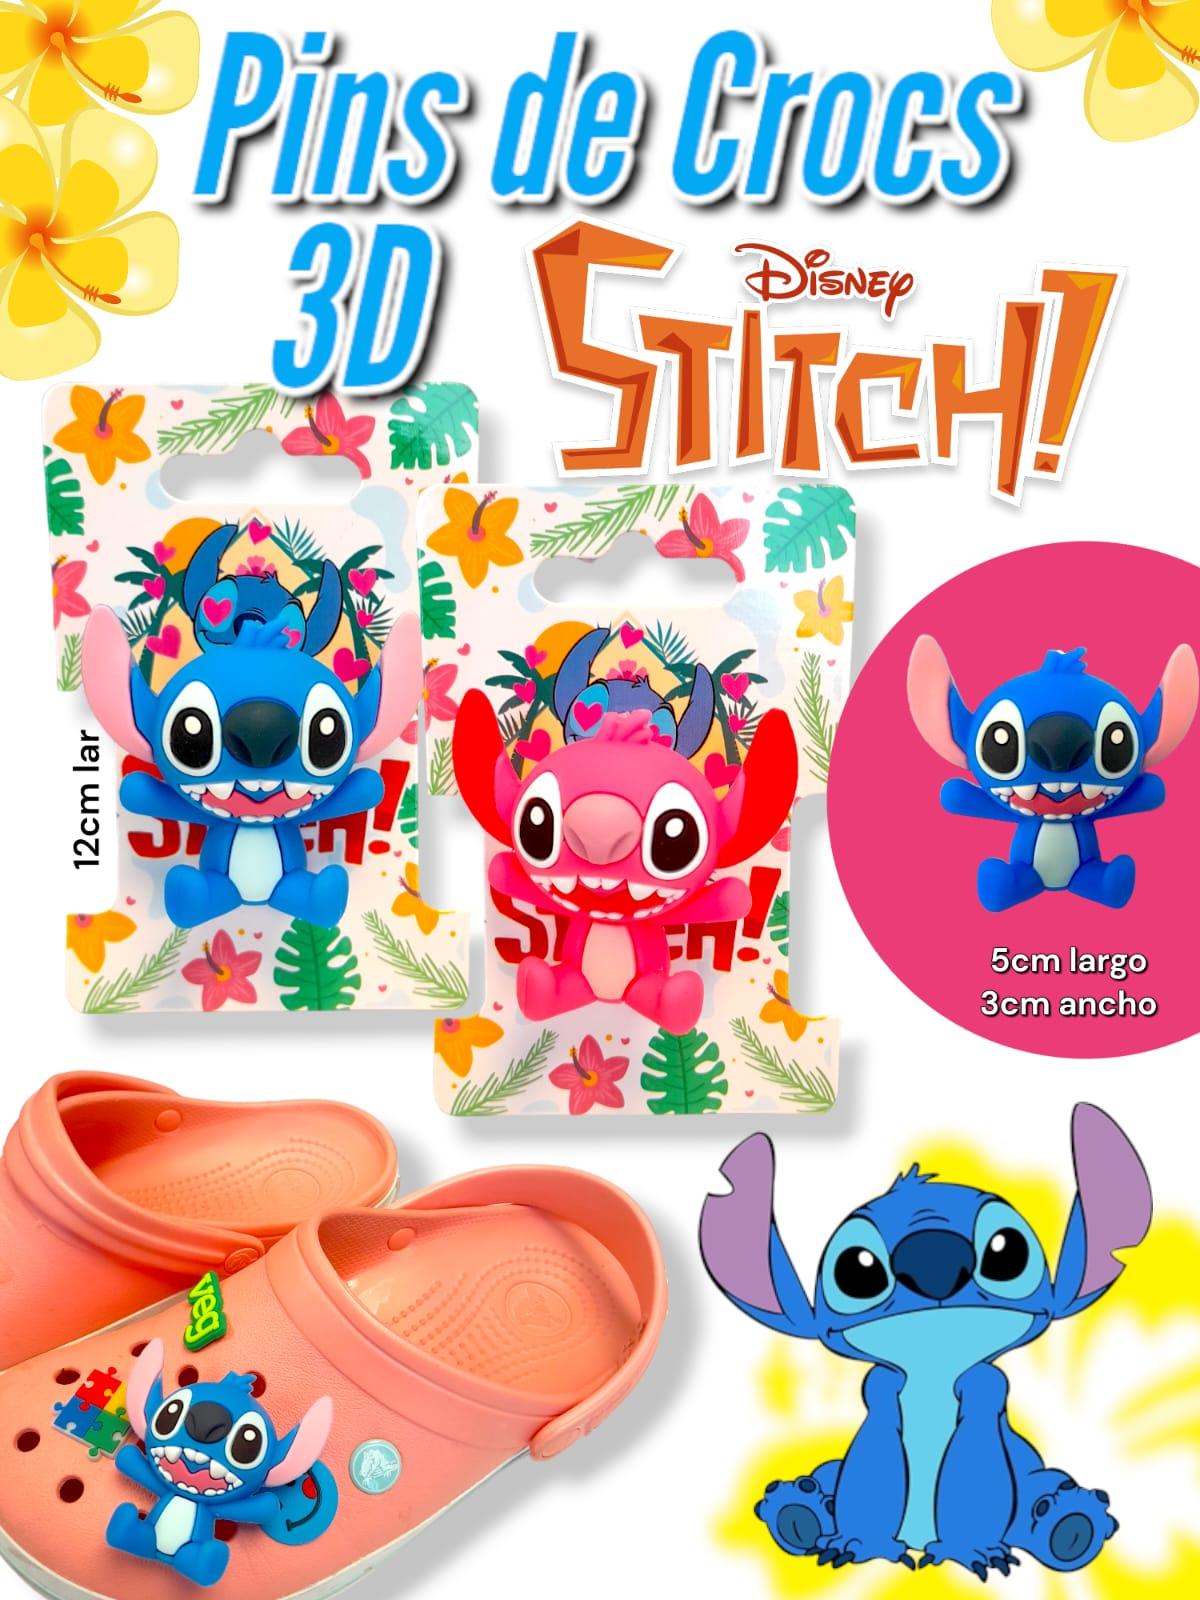 Pins de Crocs 3D Stitch